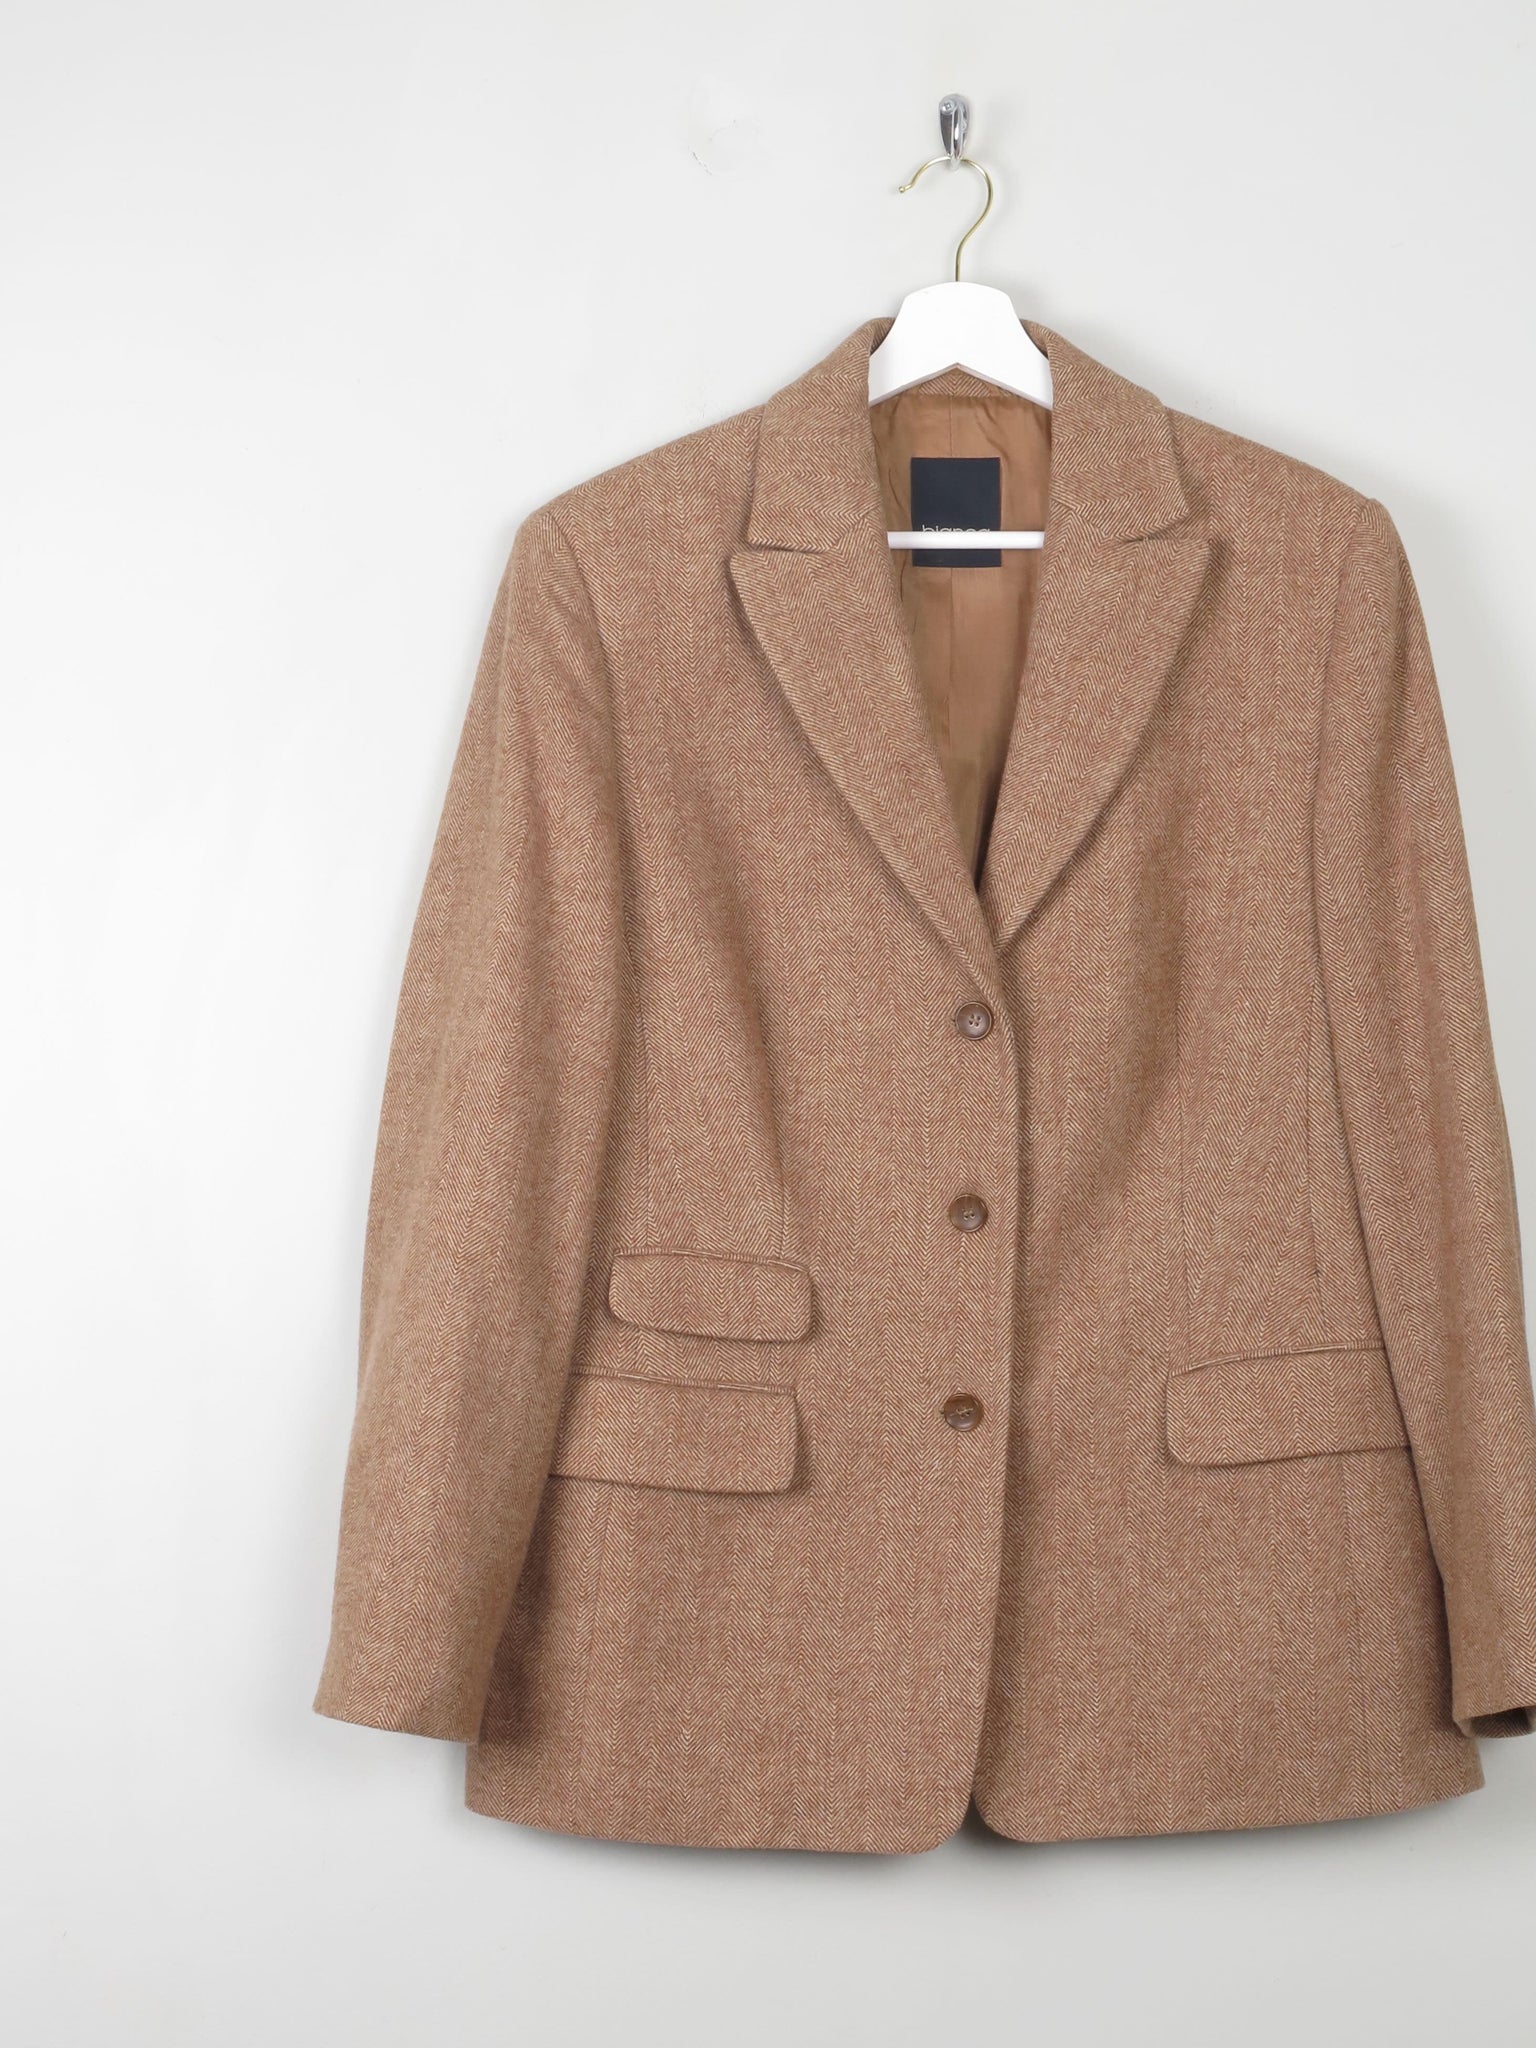 Women's Vintage  Light Tweed Jacket L - The Harlequin